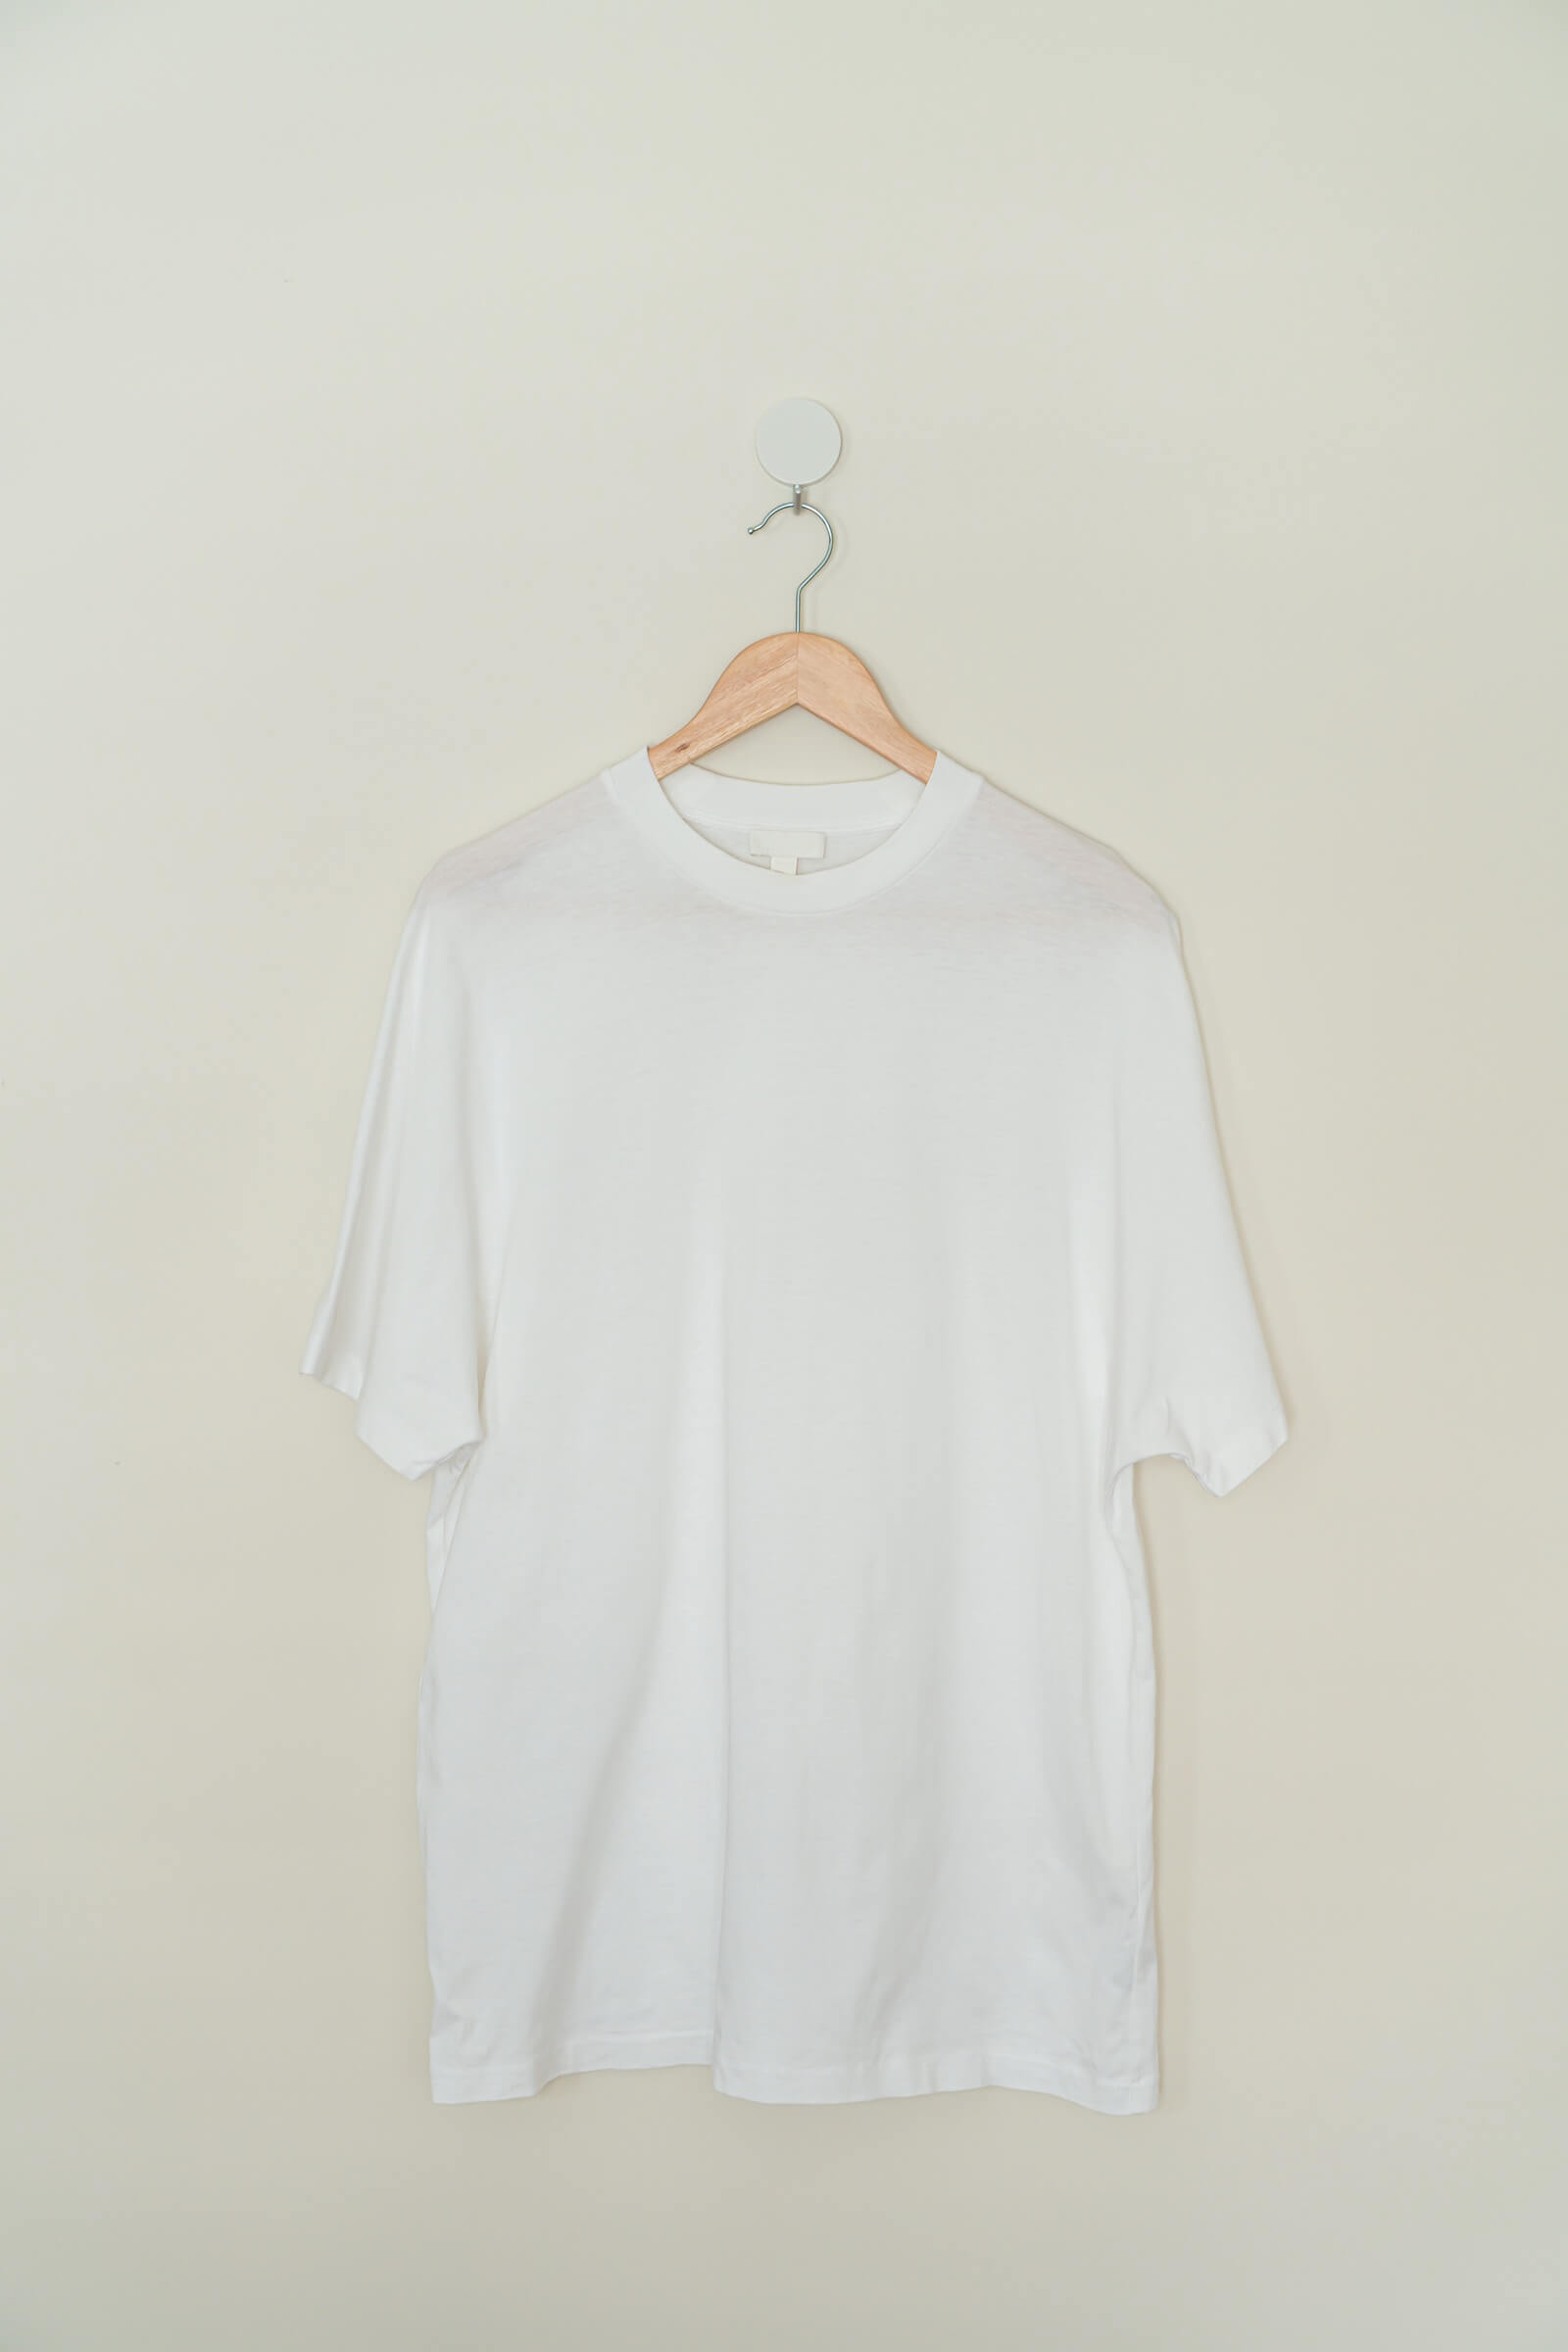 T-Shirt / White